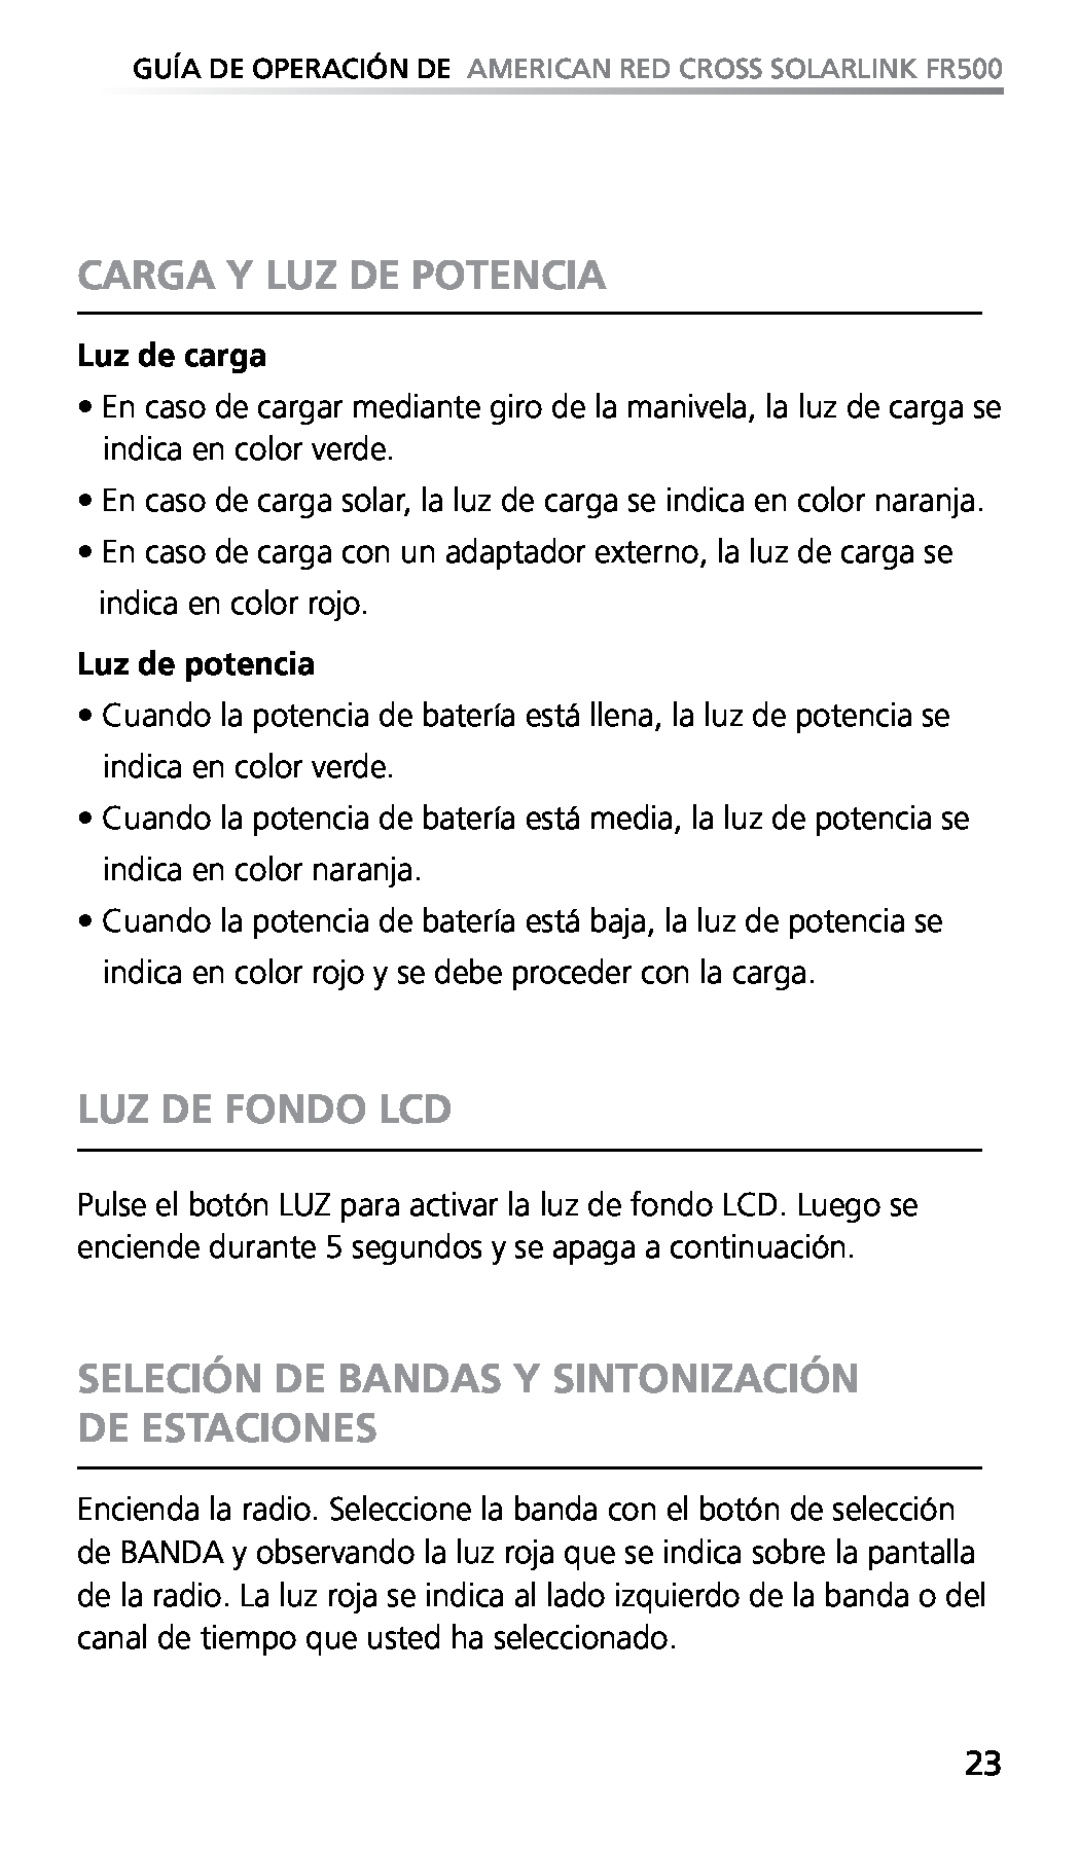 Eton FR500 Carga Y Luz De Potencia, Luz De Fondo Lcd, Seleción De Bandas Y Sintonización De Estaciones, Luz de carga 